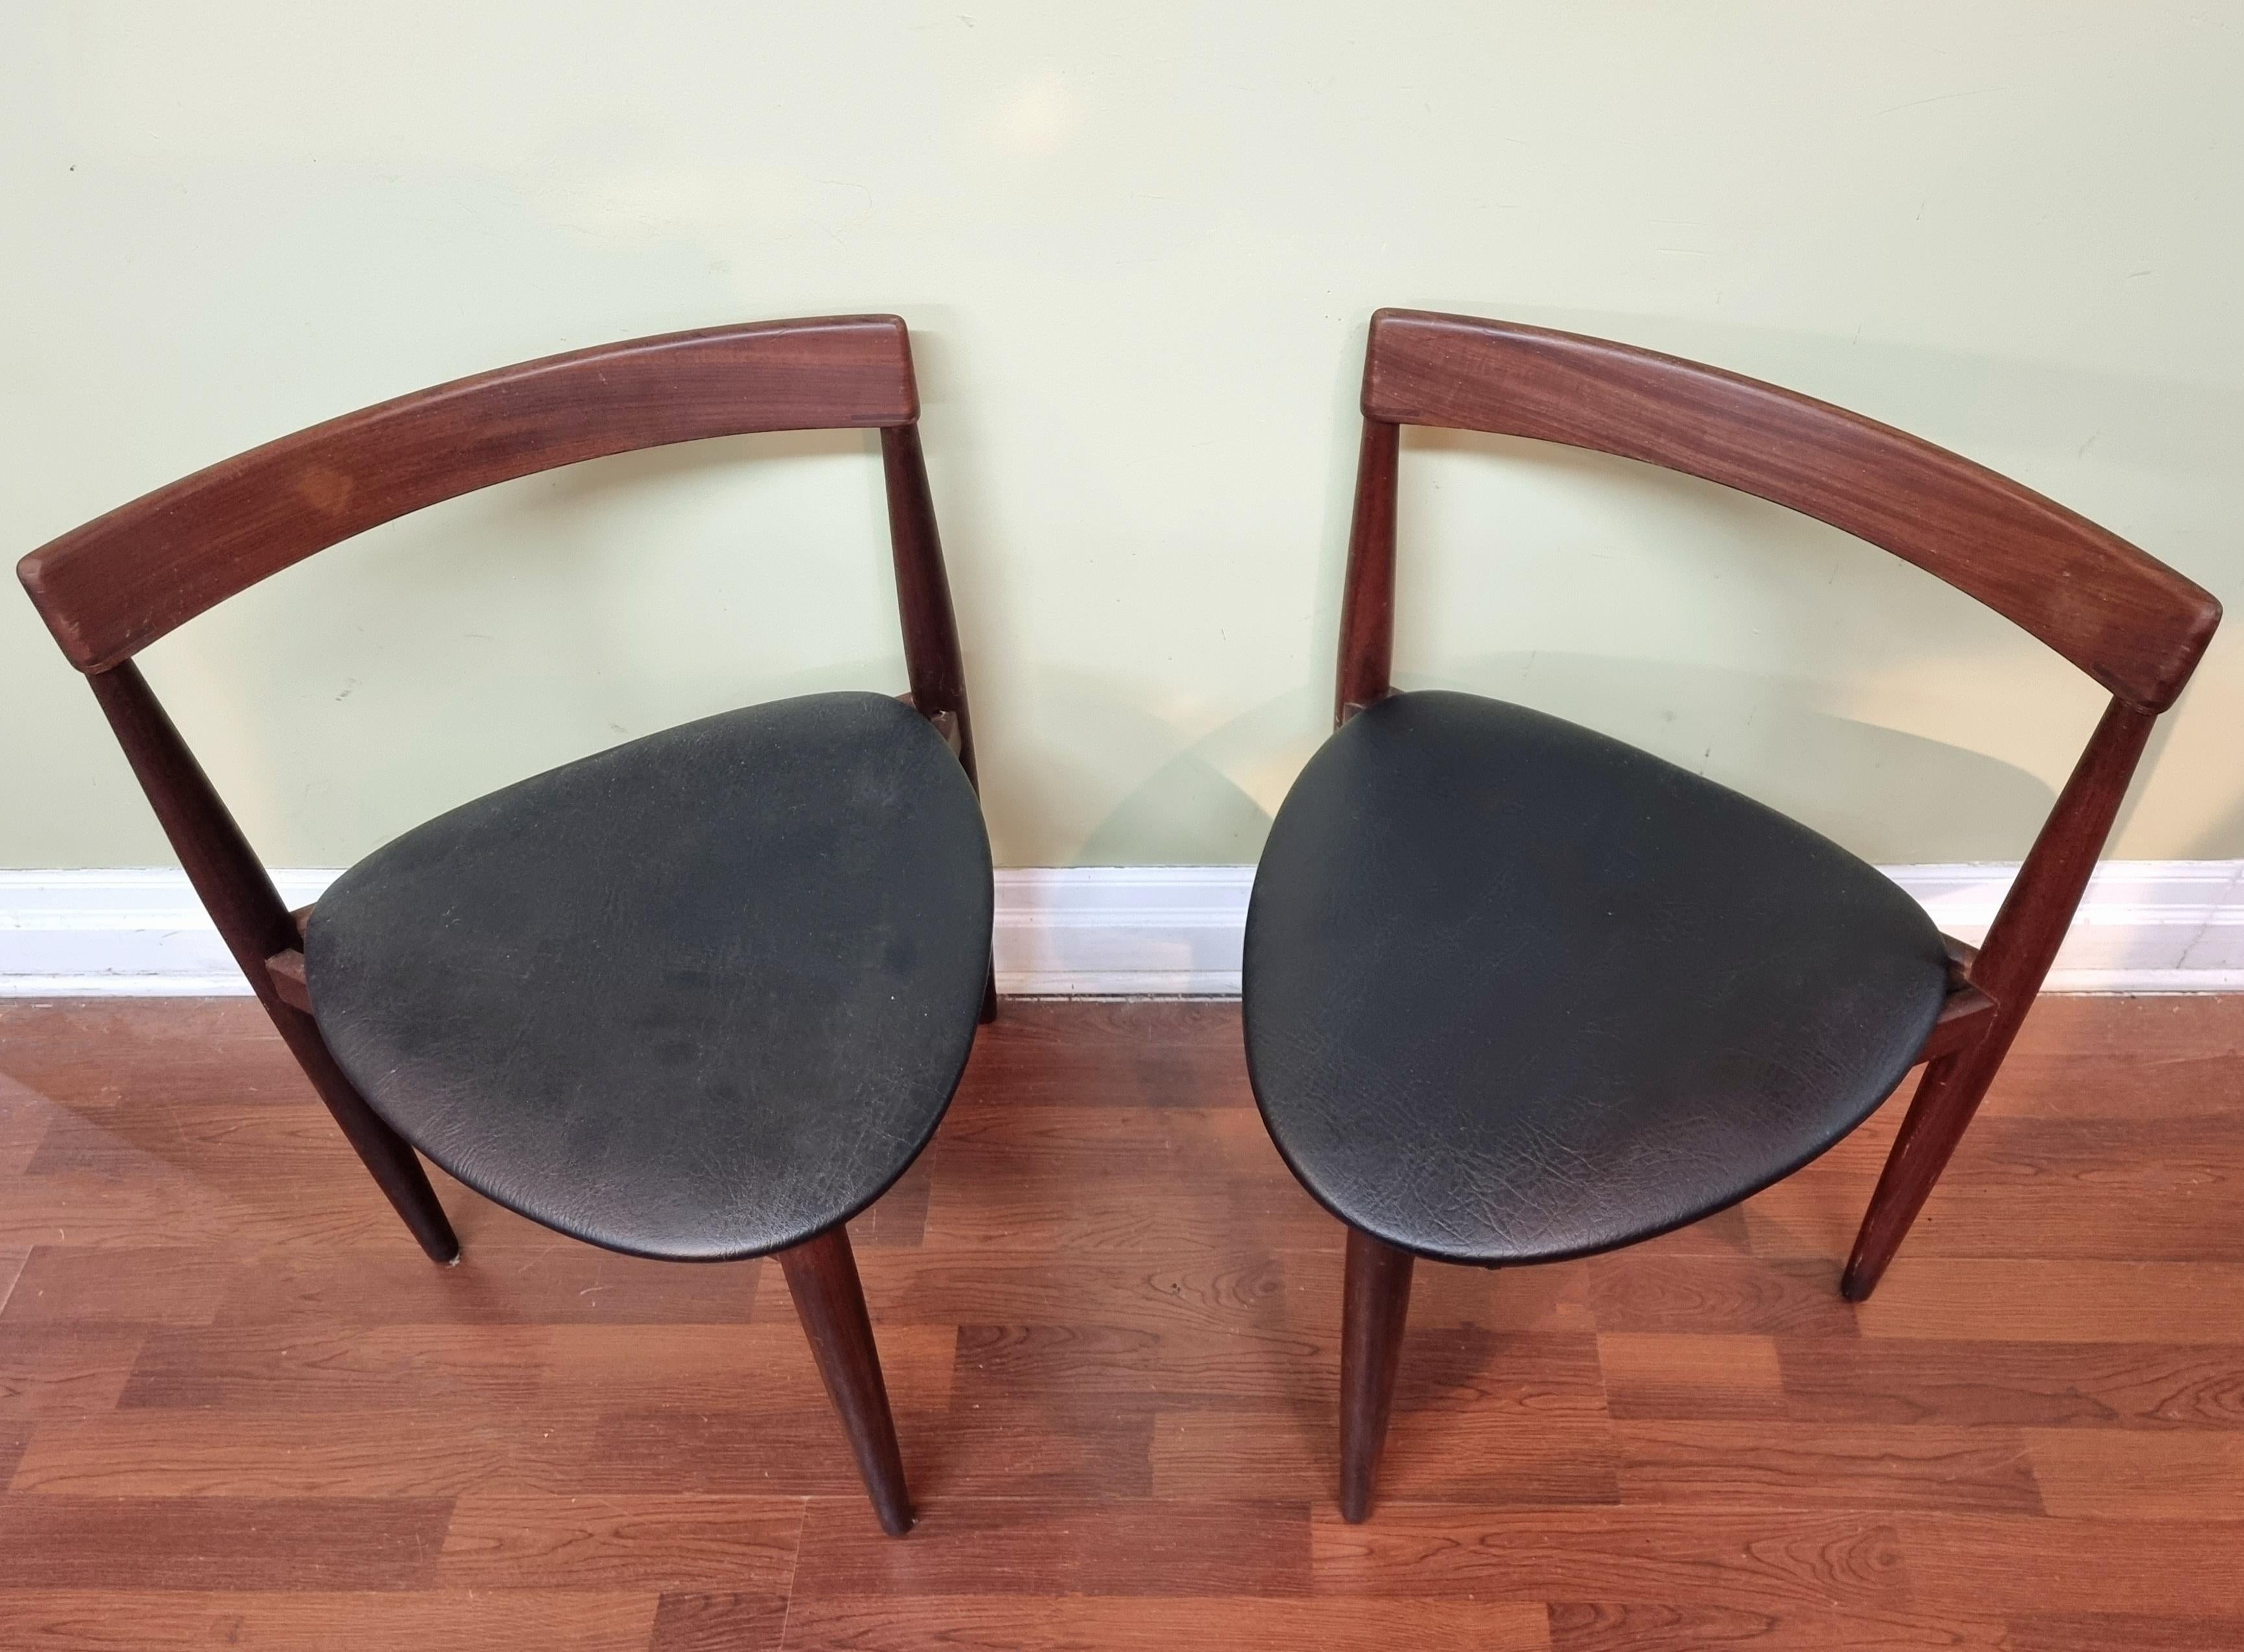 Pair of Danish Teak Hans Olsen Triangular Chairs 1950's, Made In Denmark For Sale 3